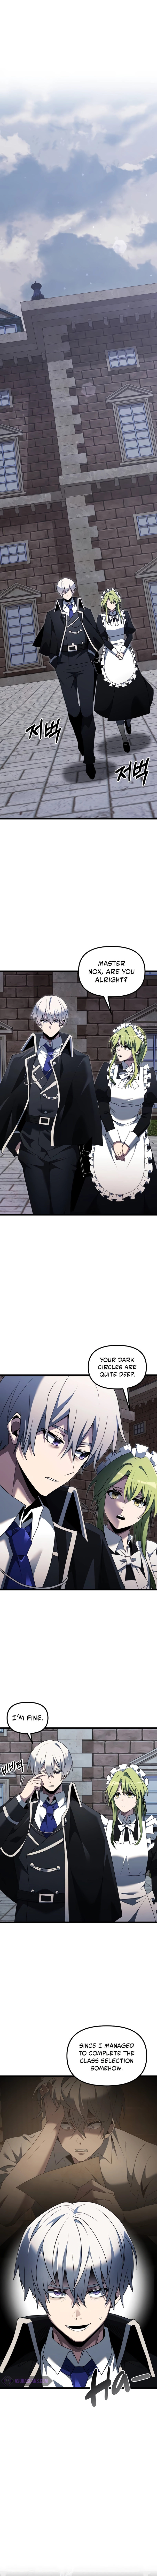 Terminally-Ill Genius Dark Knight - Chapter 48 Page 2